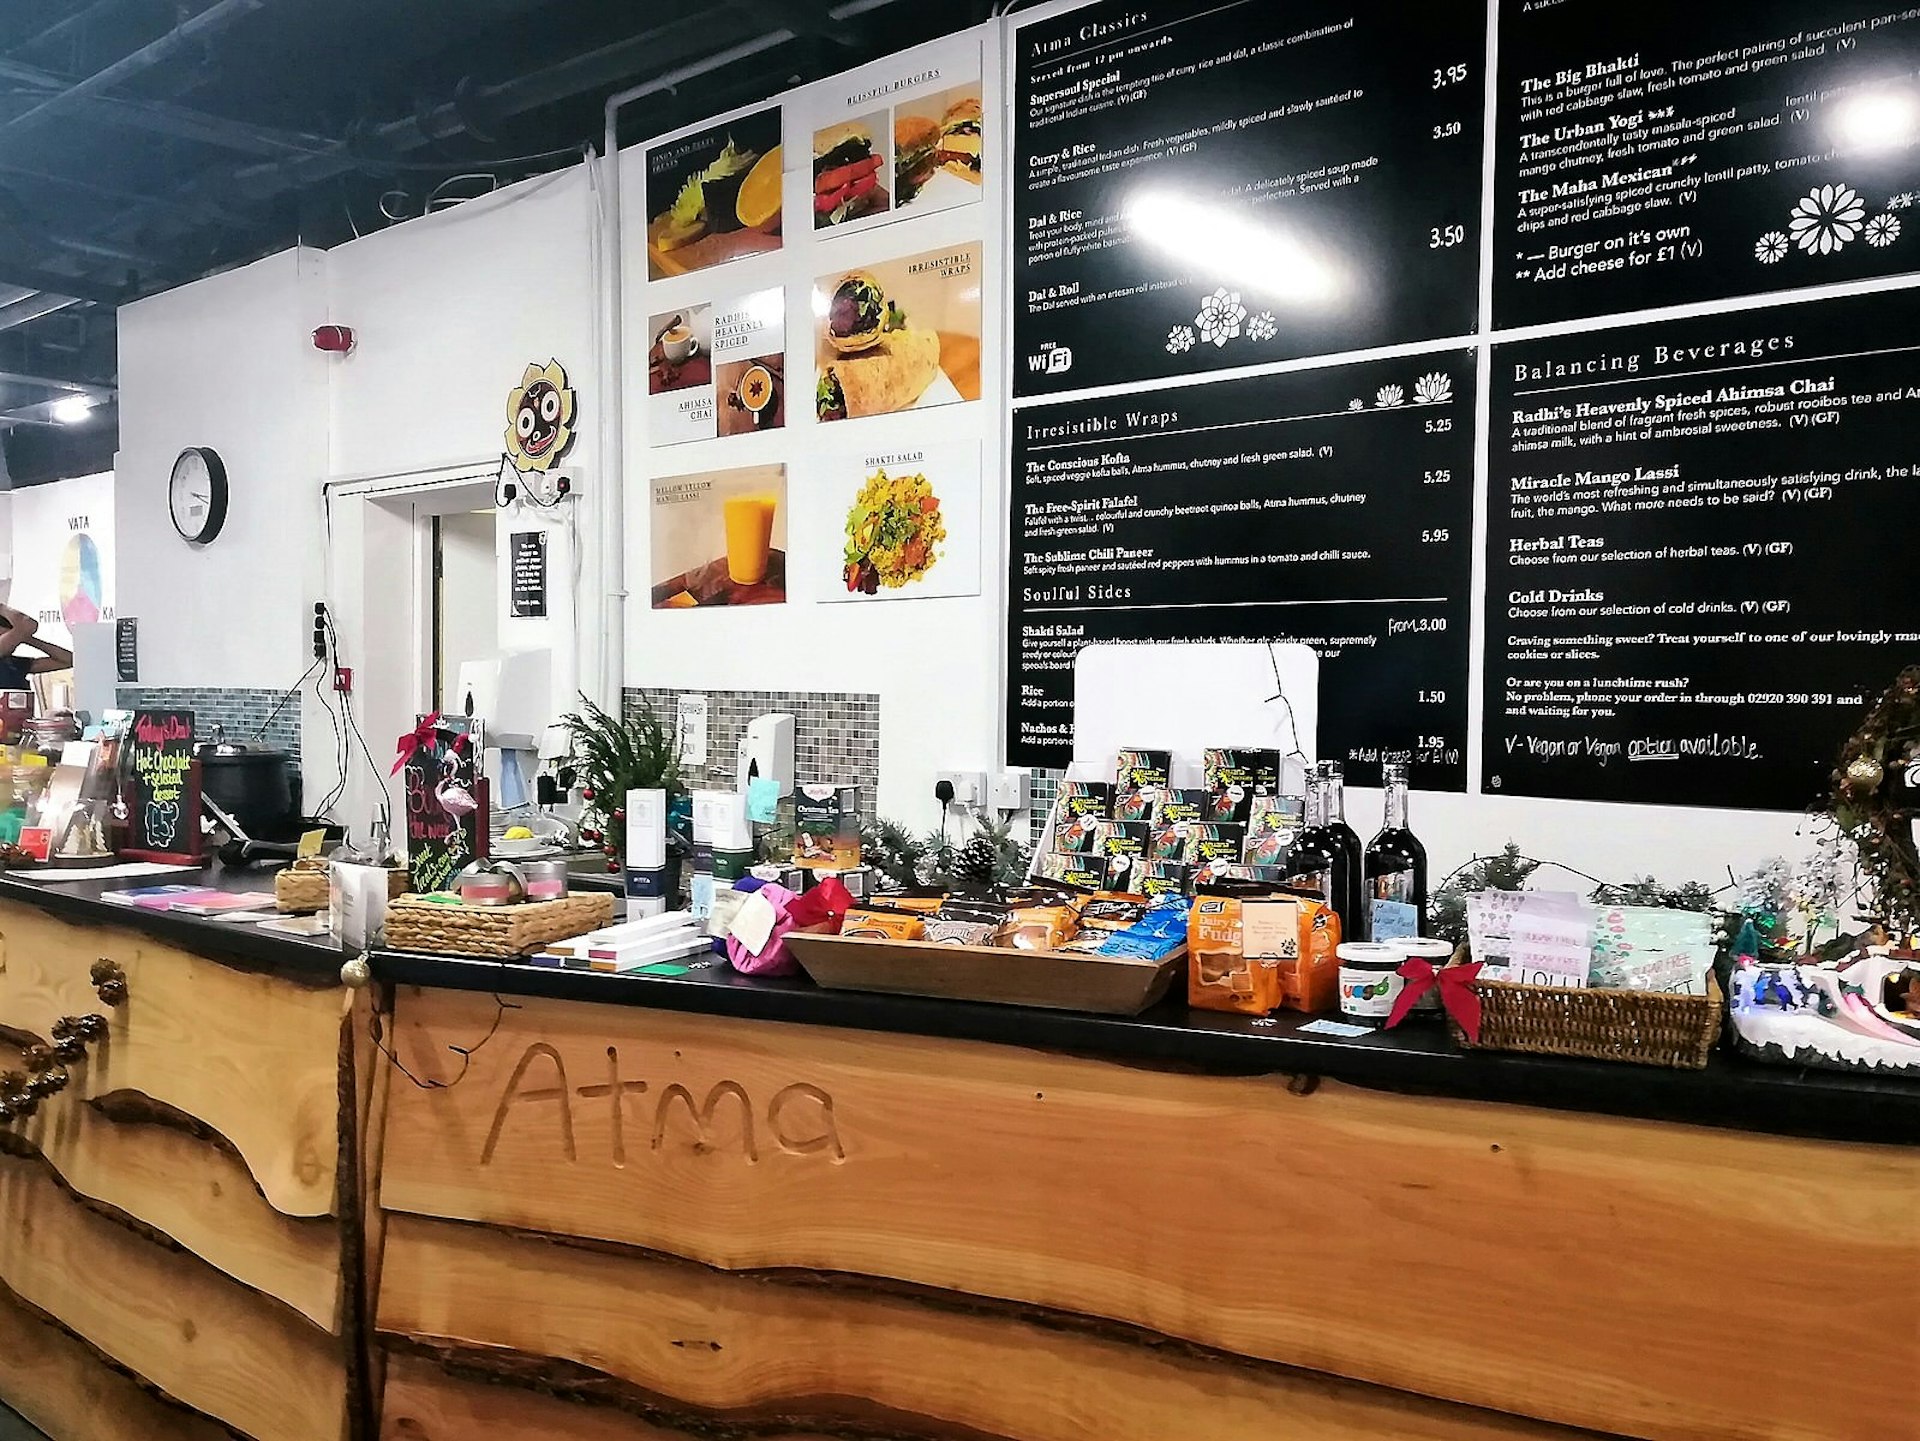 Café Atma, Cardiff